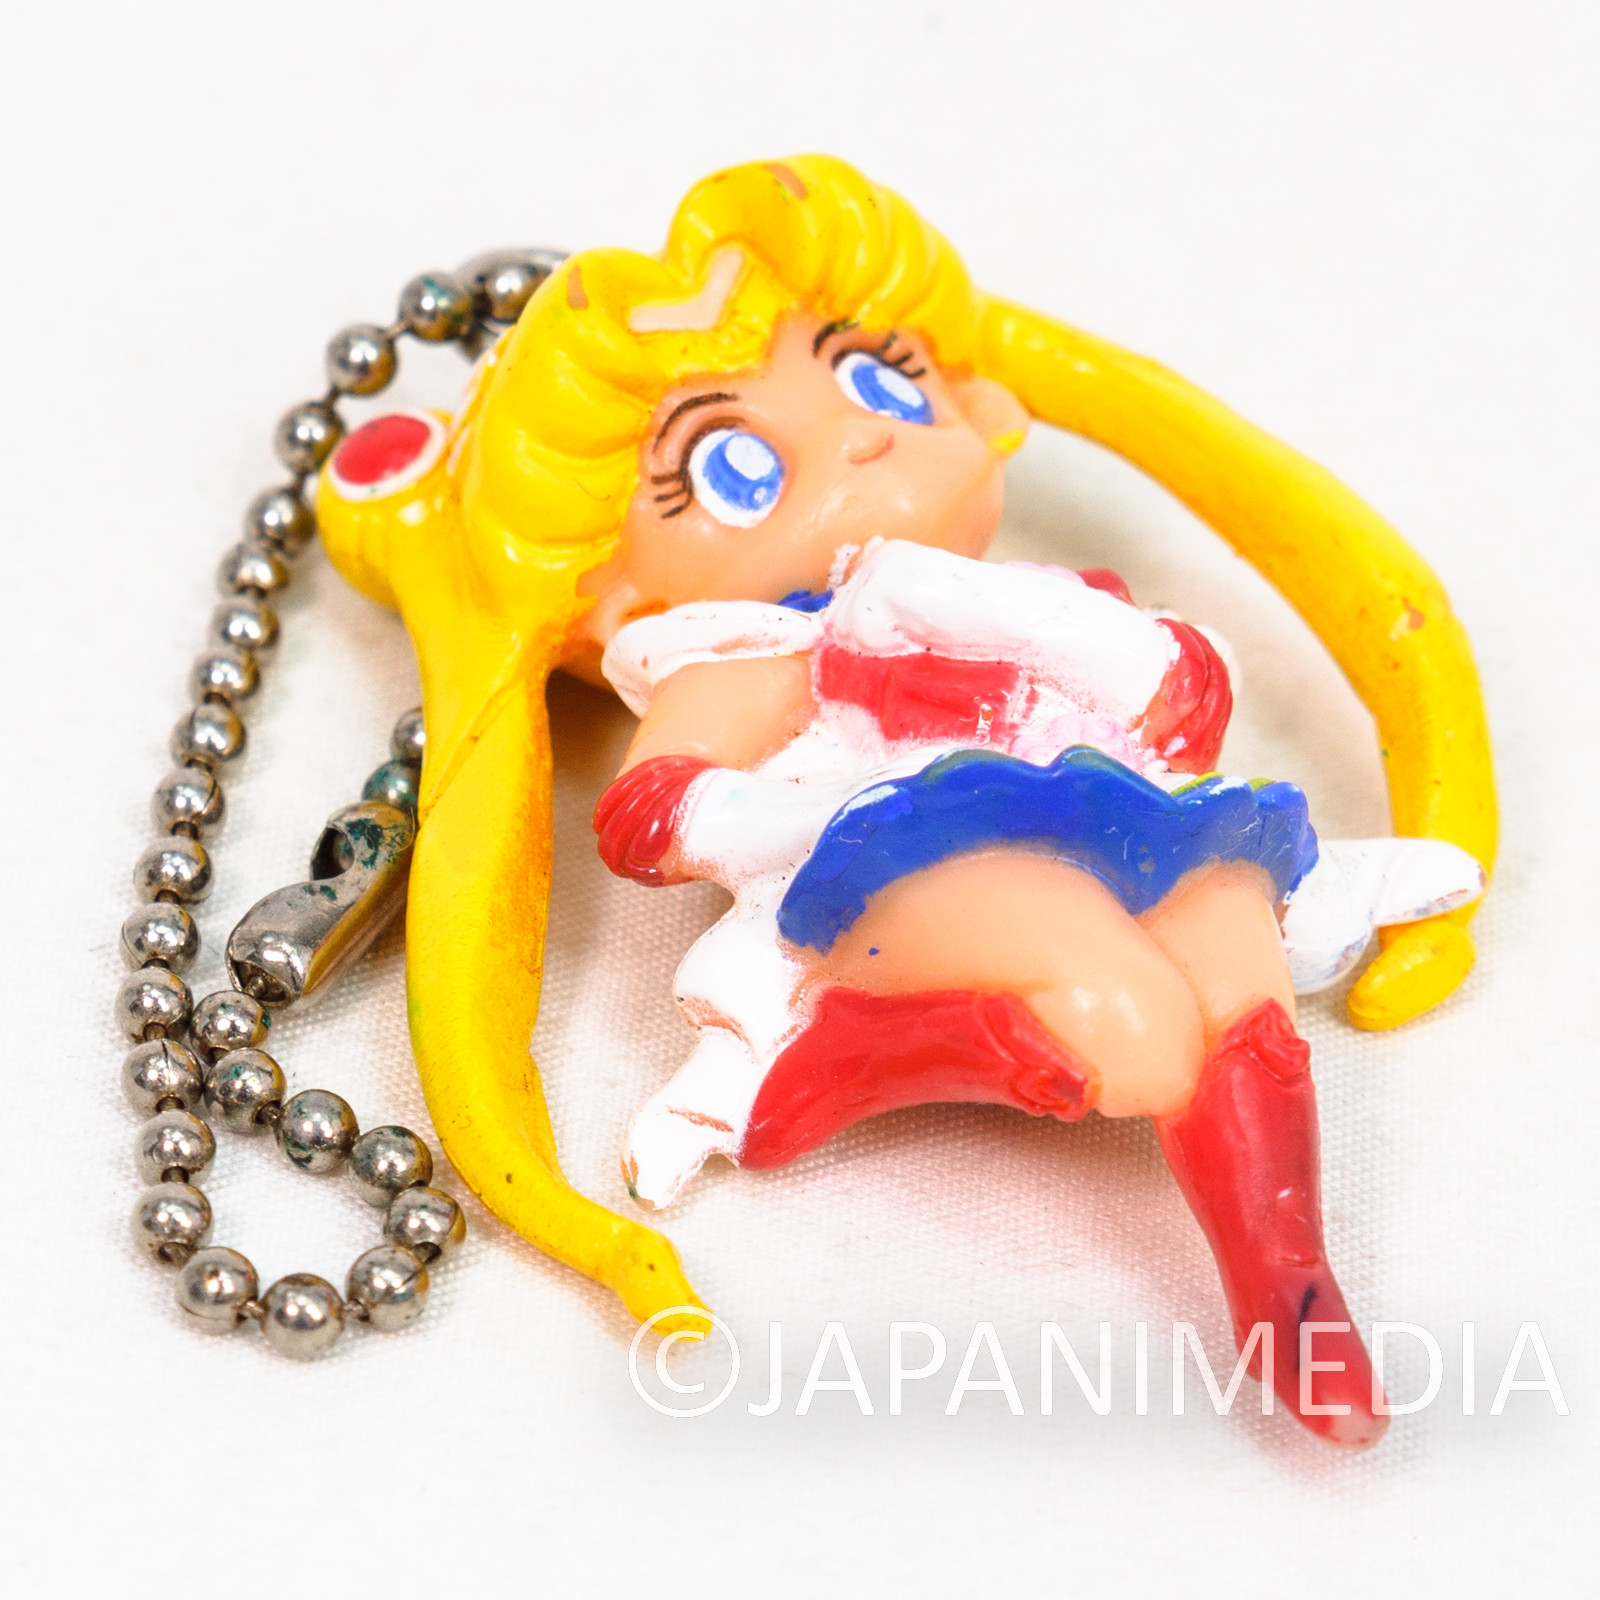 Sailor Moon Usagi Tsukino Figure Ballchain JAPAN ANIME MANGA 3